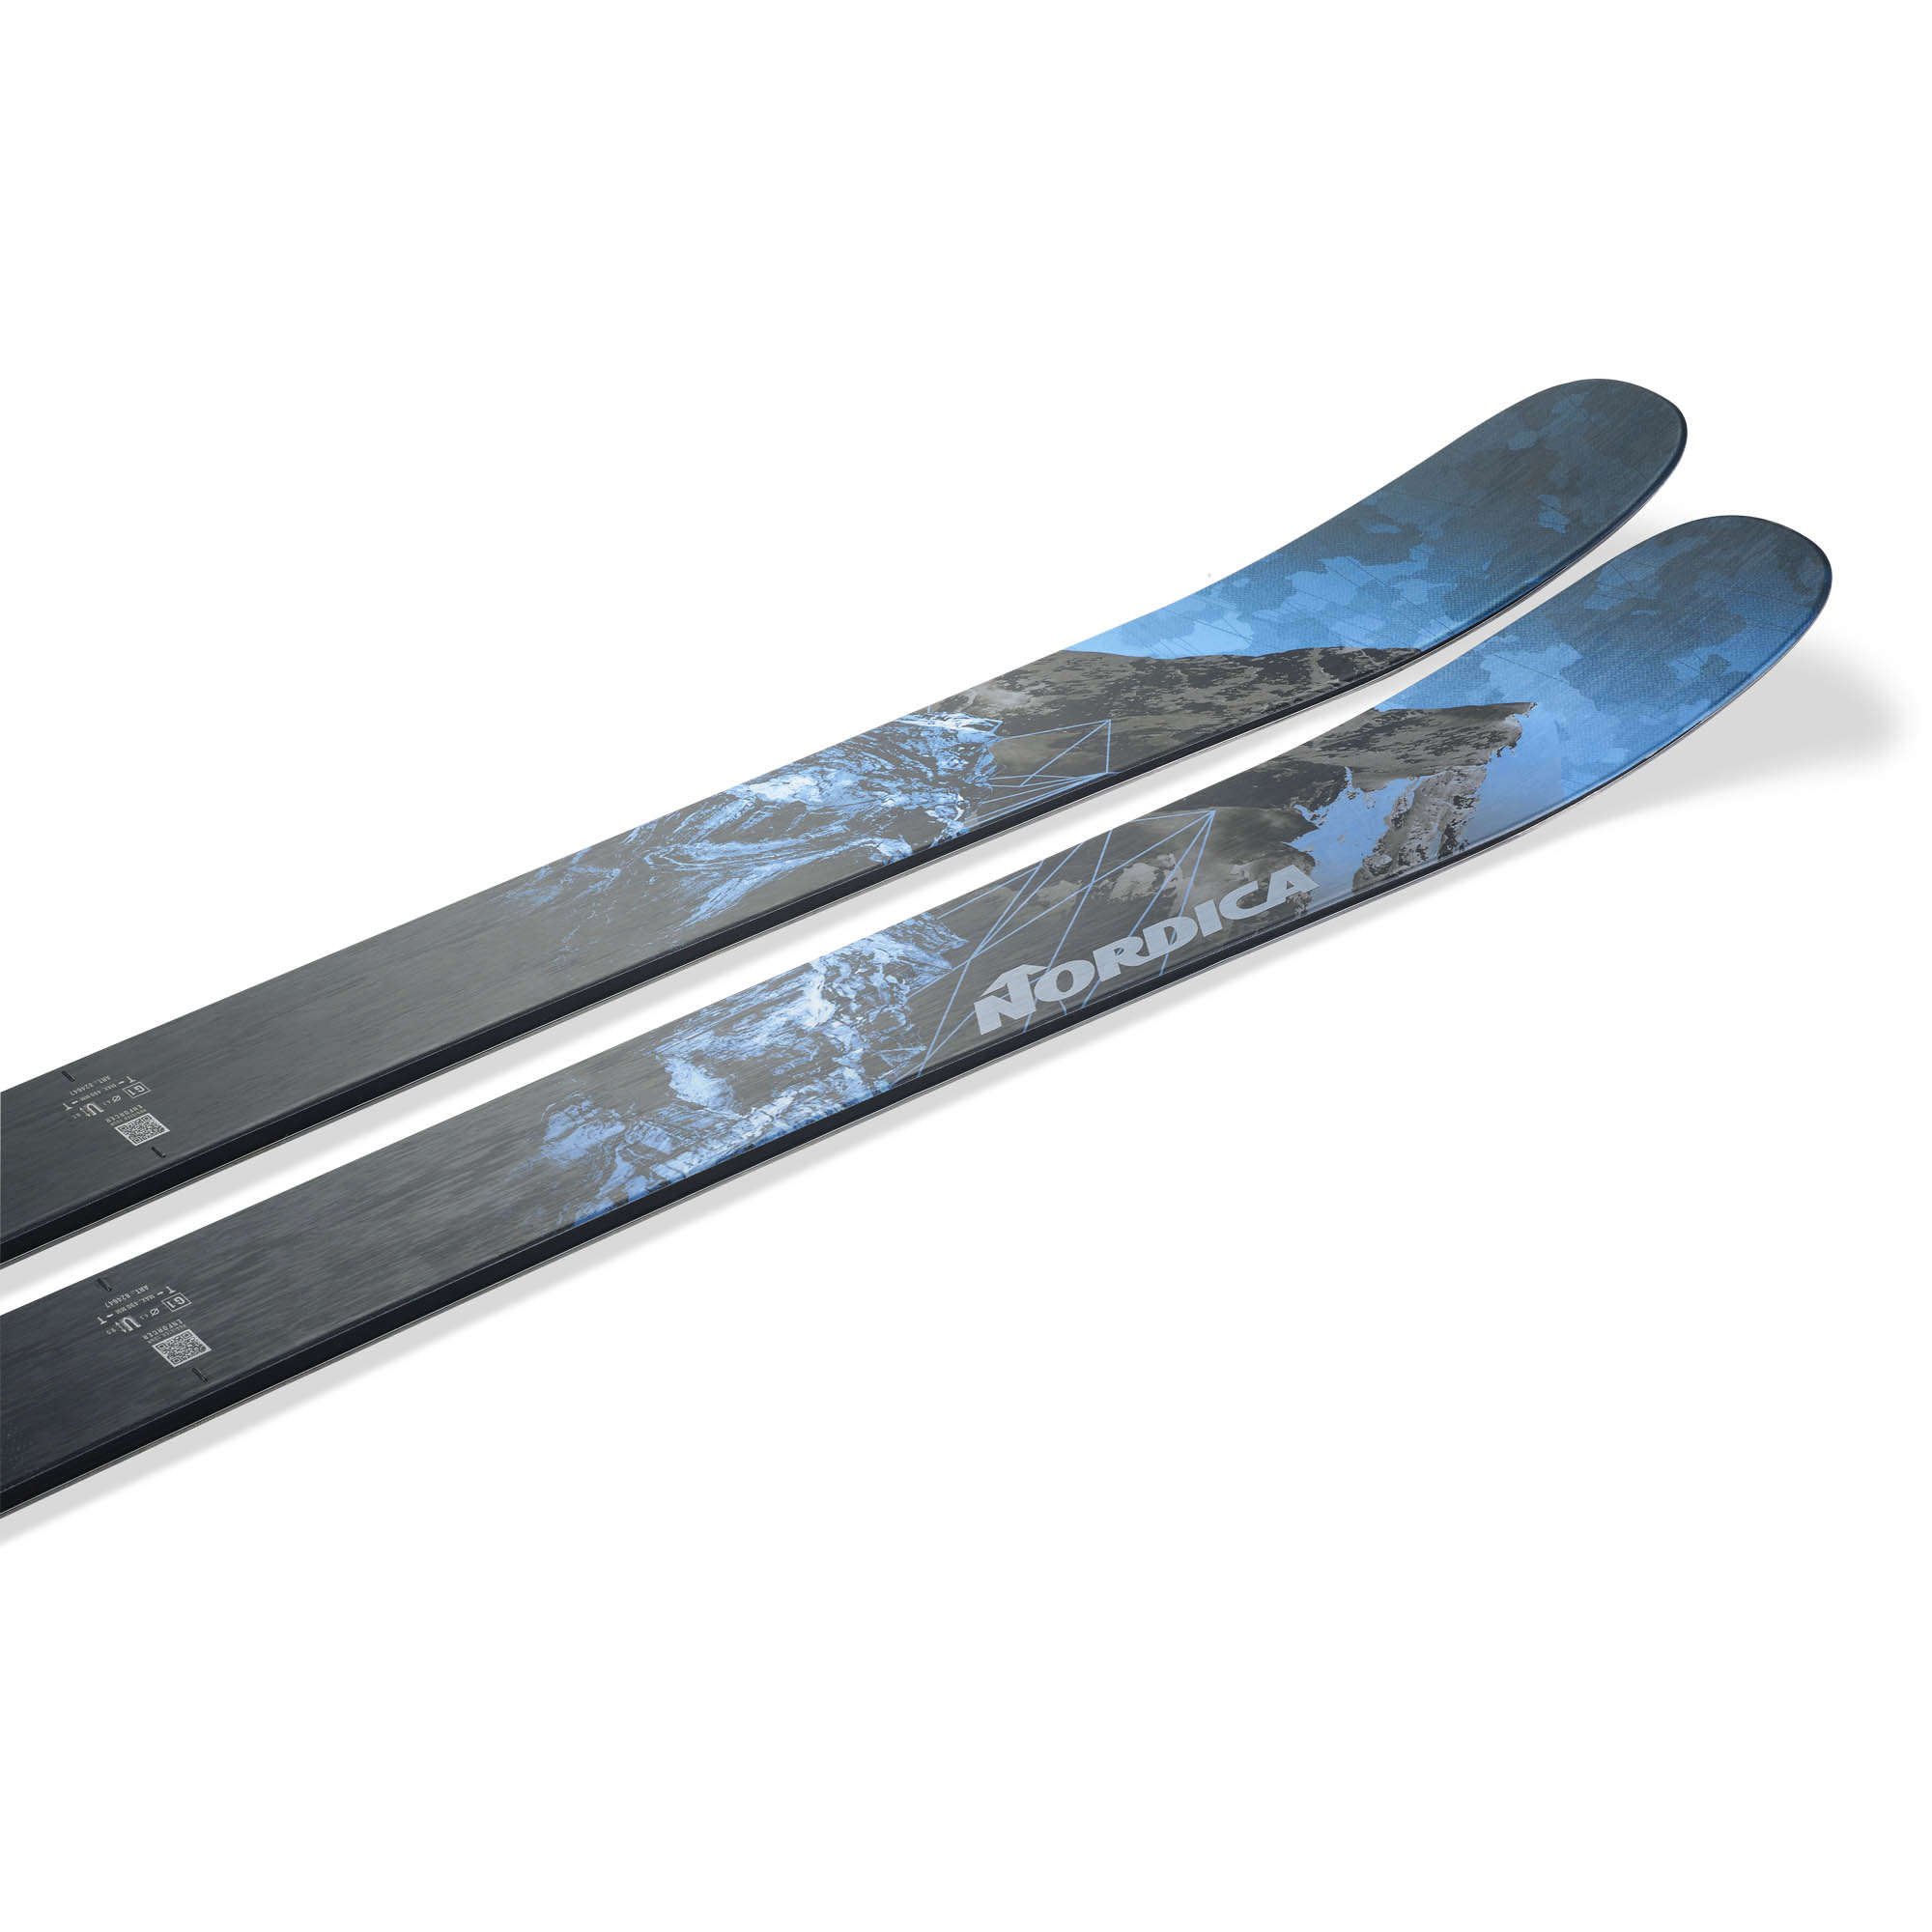 Nordica Enforcer 104 Skis